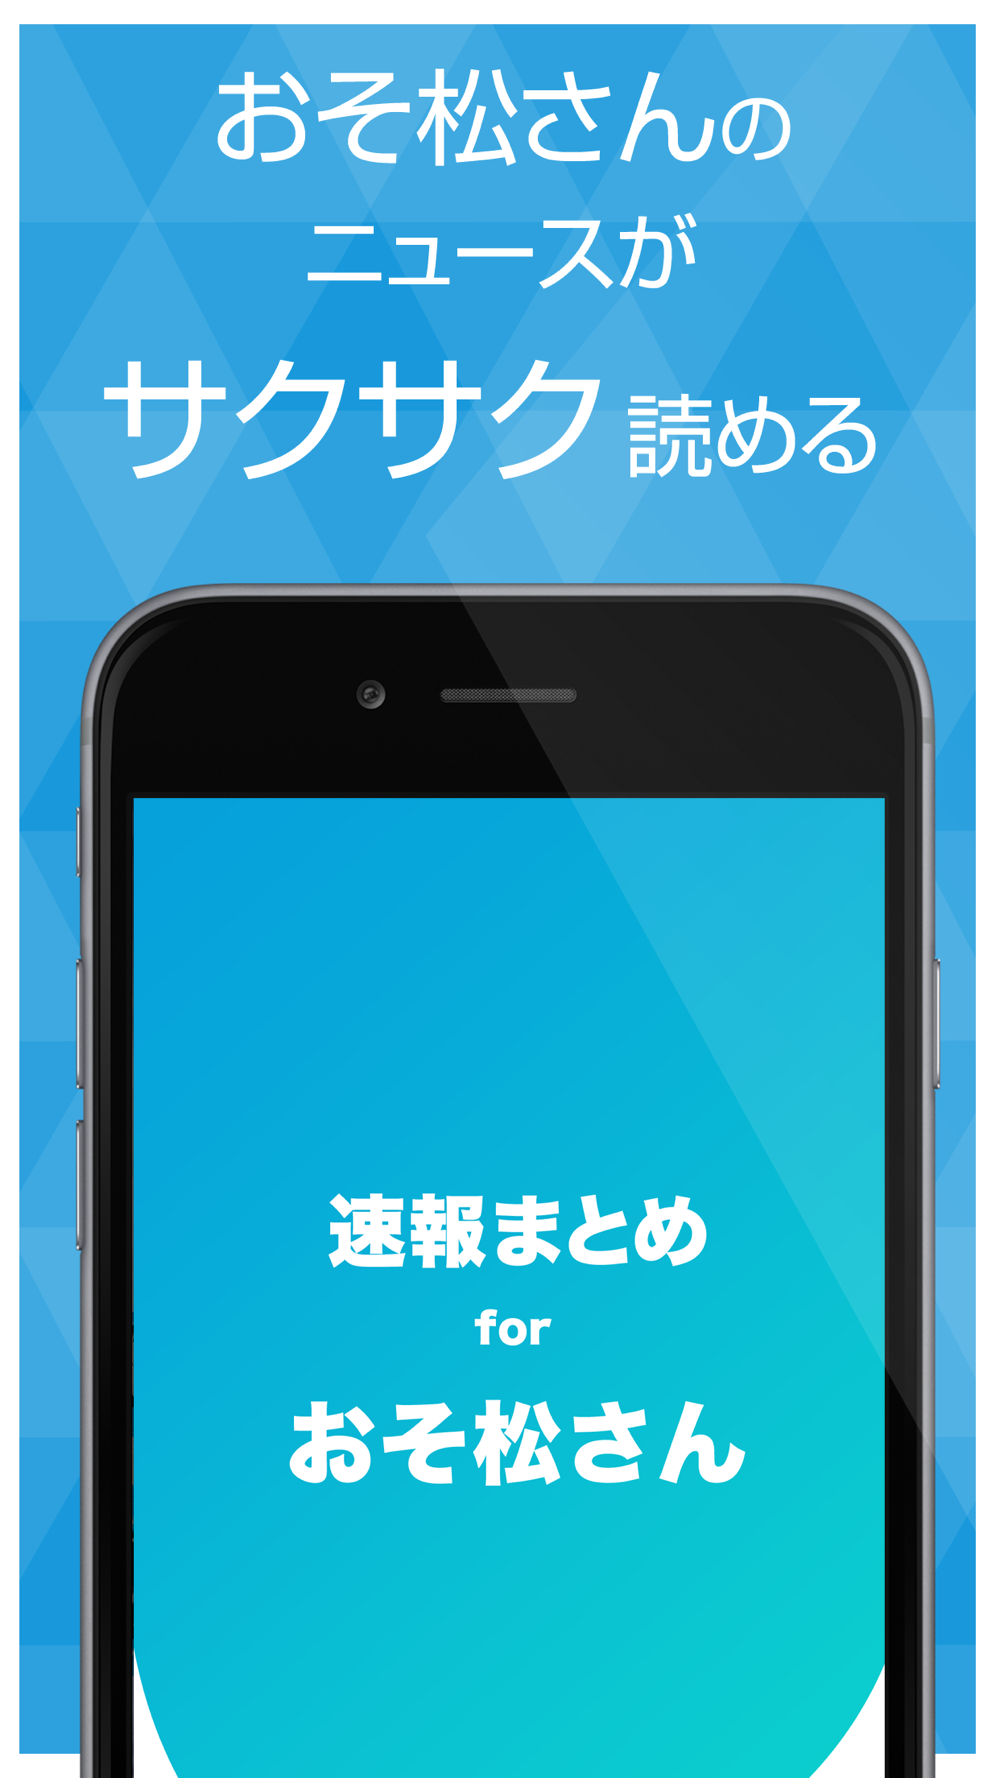 ニュースまとめ速報 For おそ松さん おそ松さんの最新情報をまとめてお届け Free Download App For Iphone Steprimo Com